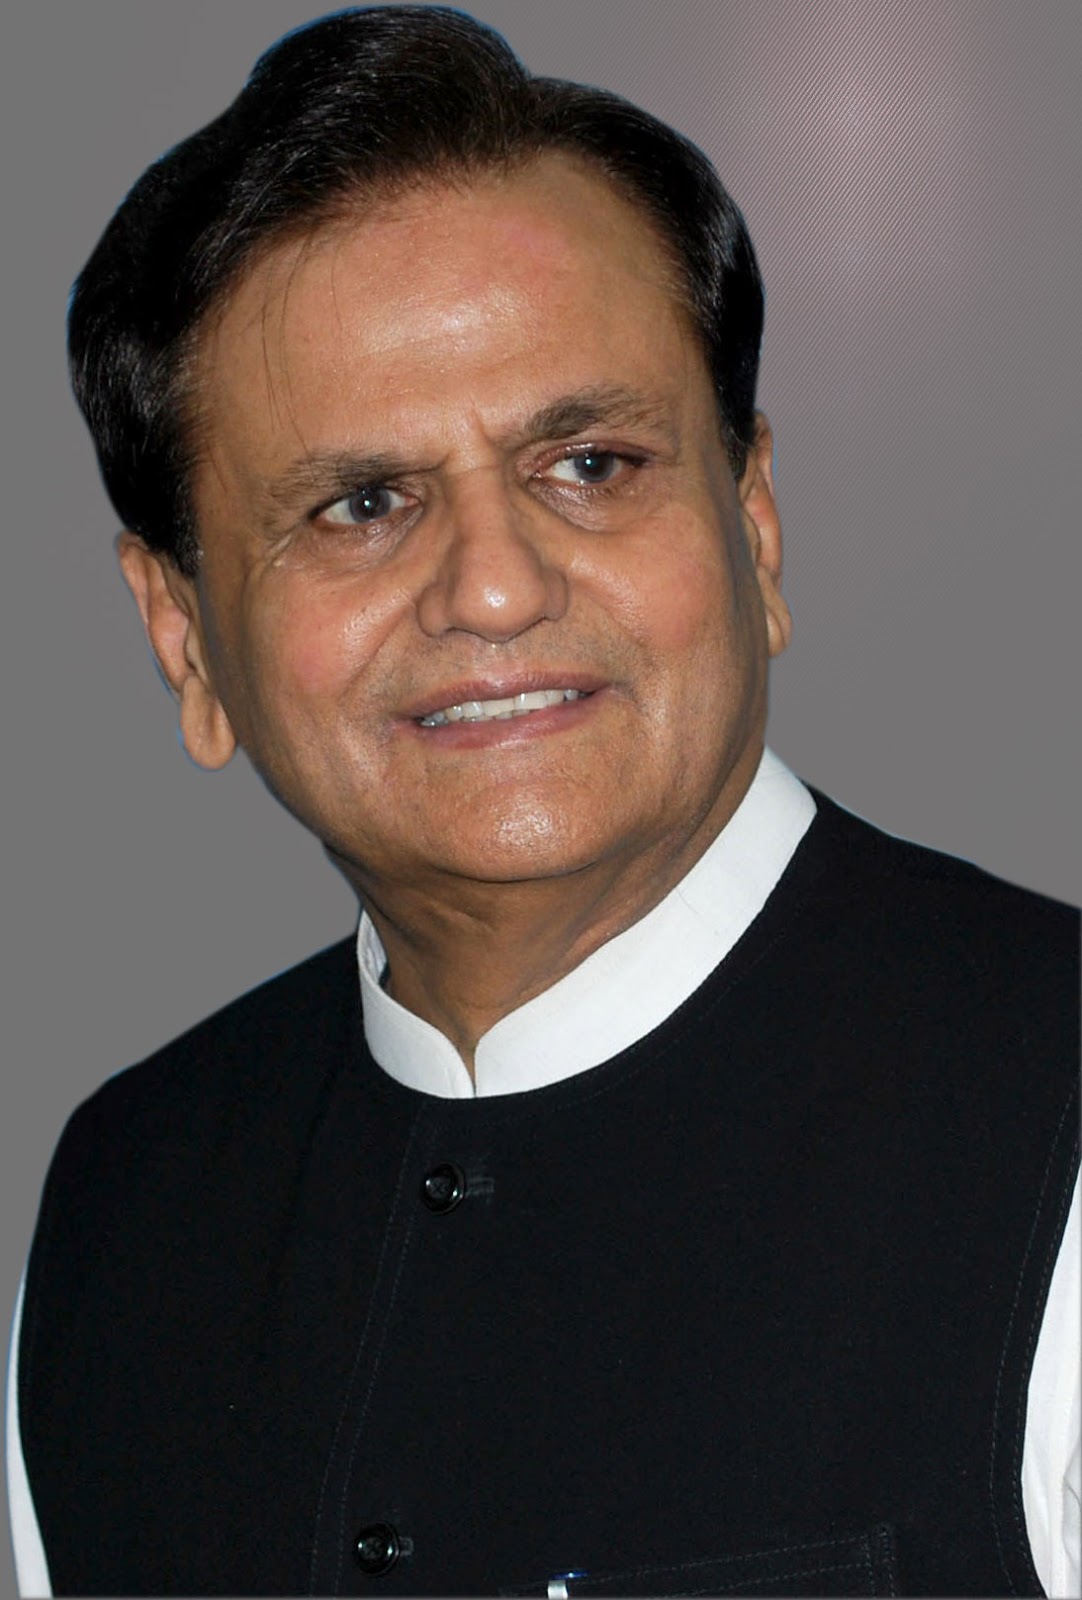 Veteran Congress leader Ahmed Patel passed away